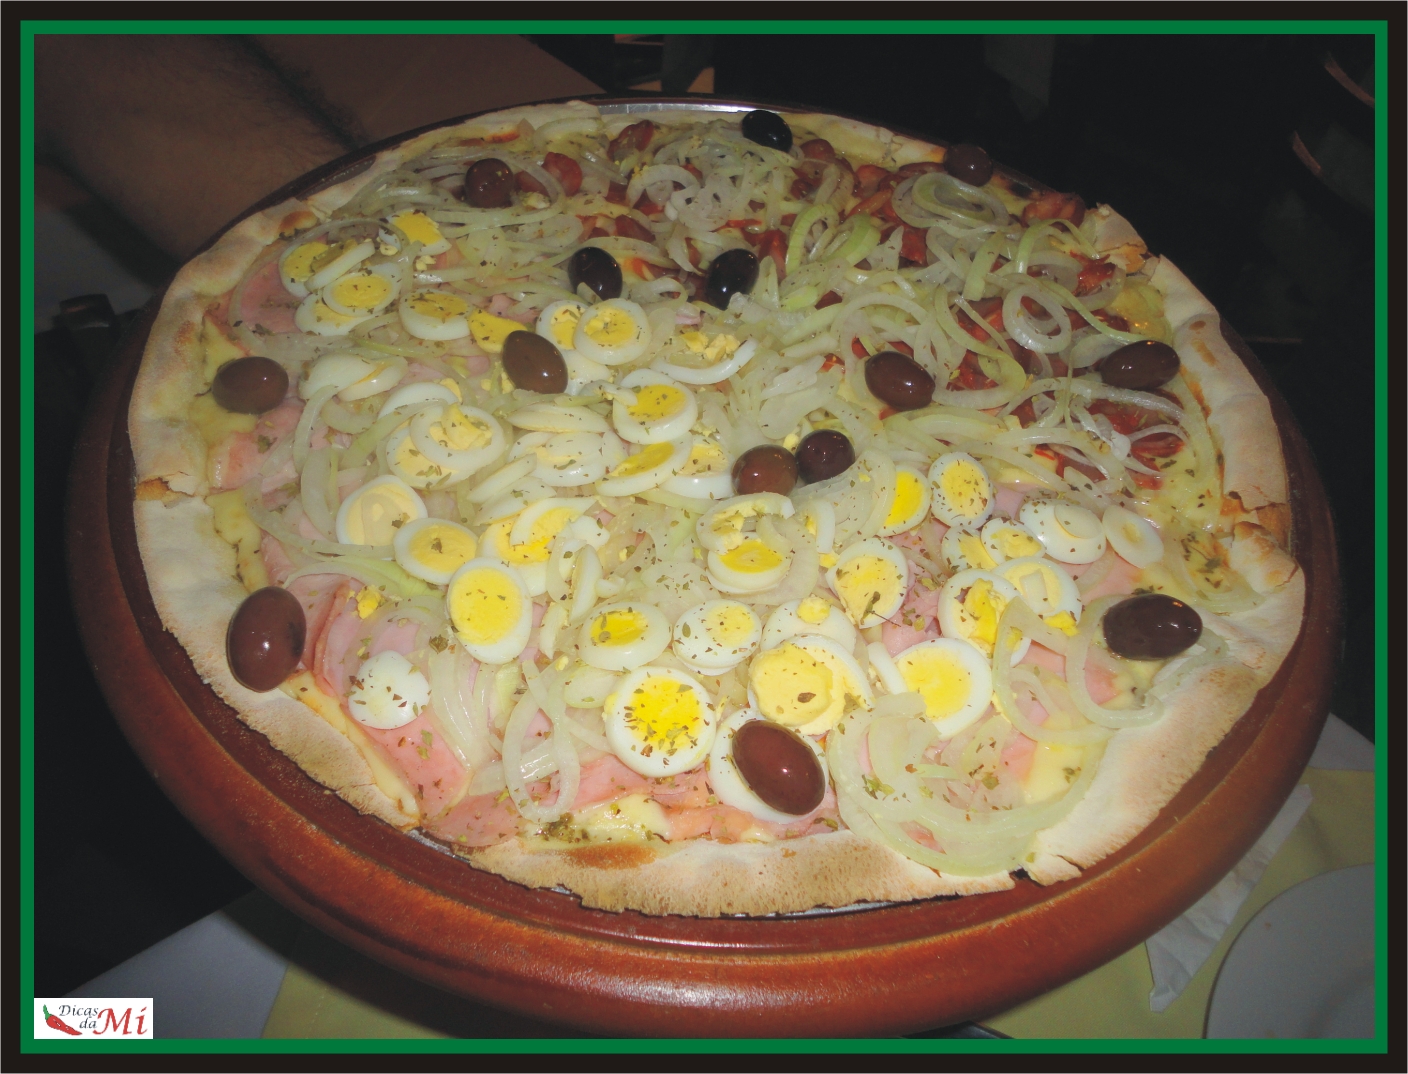 Vista superior da pizza siciliana com salame, abobrinha, galinha